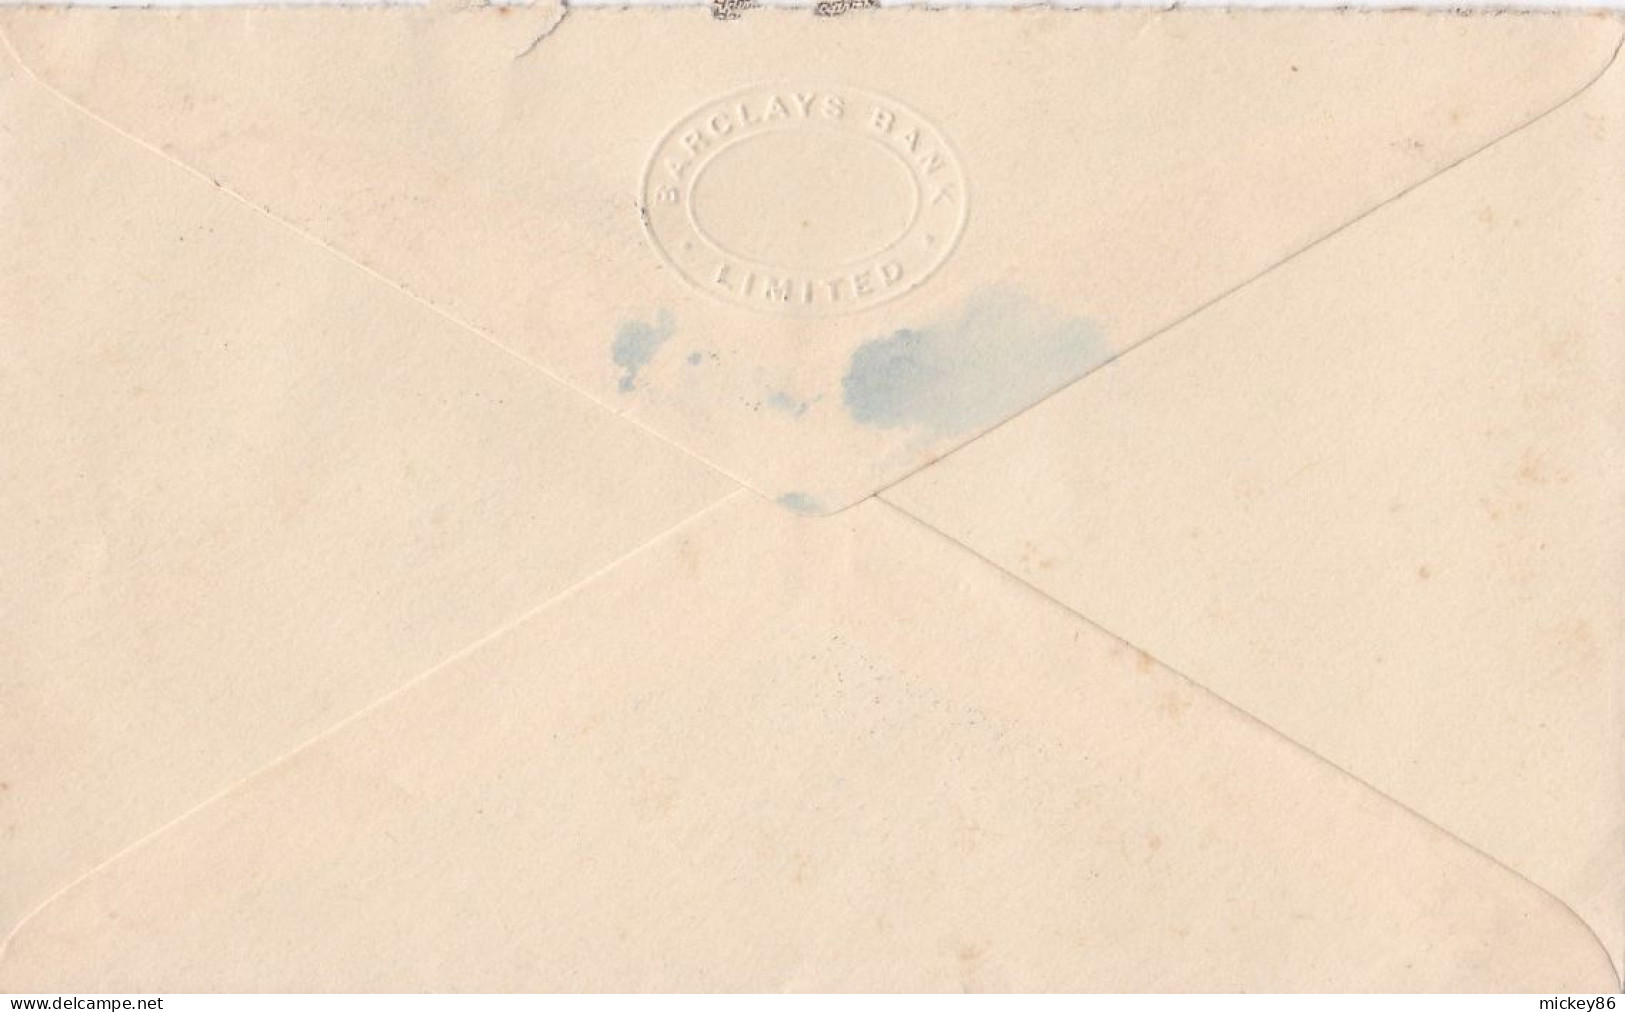 G-B--1950--lettre De LONDON  Pour Soissons-02 (France)---timbre Perforé BBK Seul Sur Lettre  , Cachet  Date  13-3-1950-- - Covers & Documents